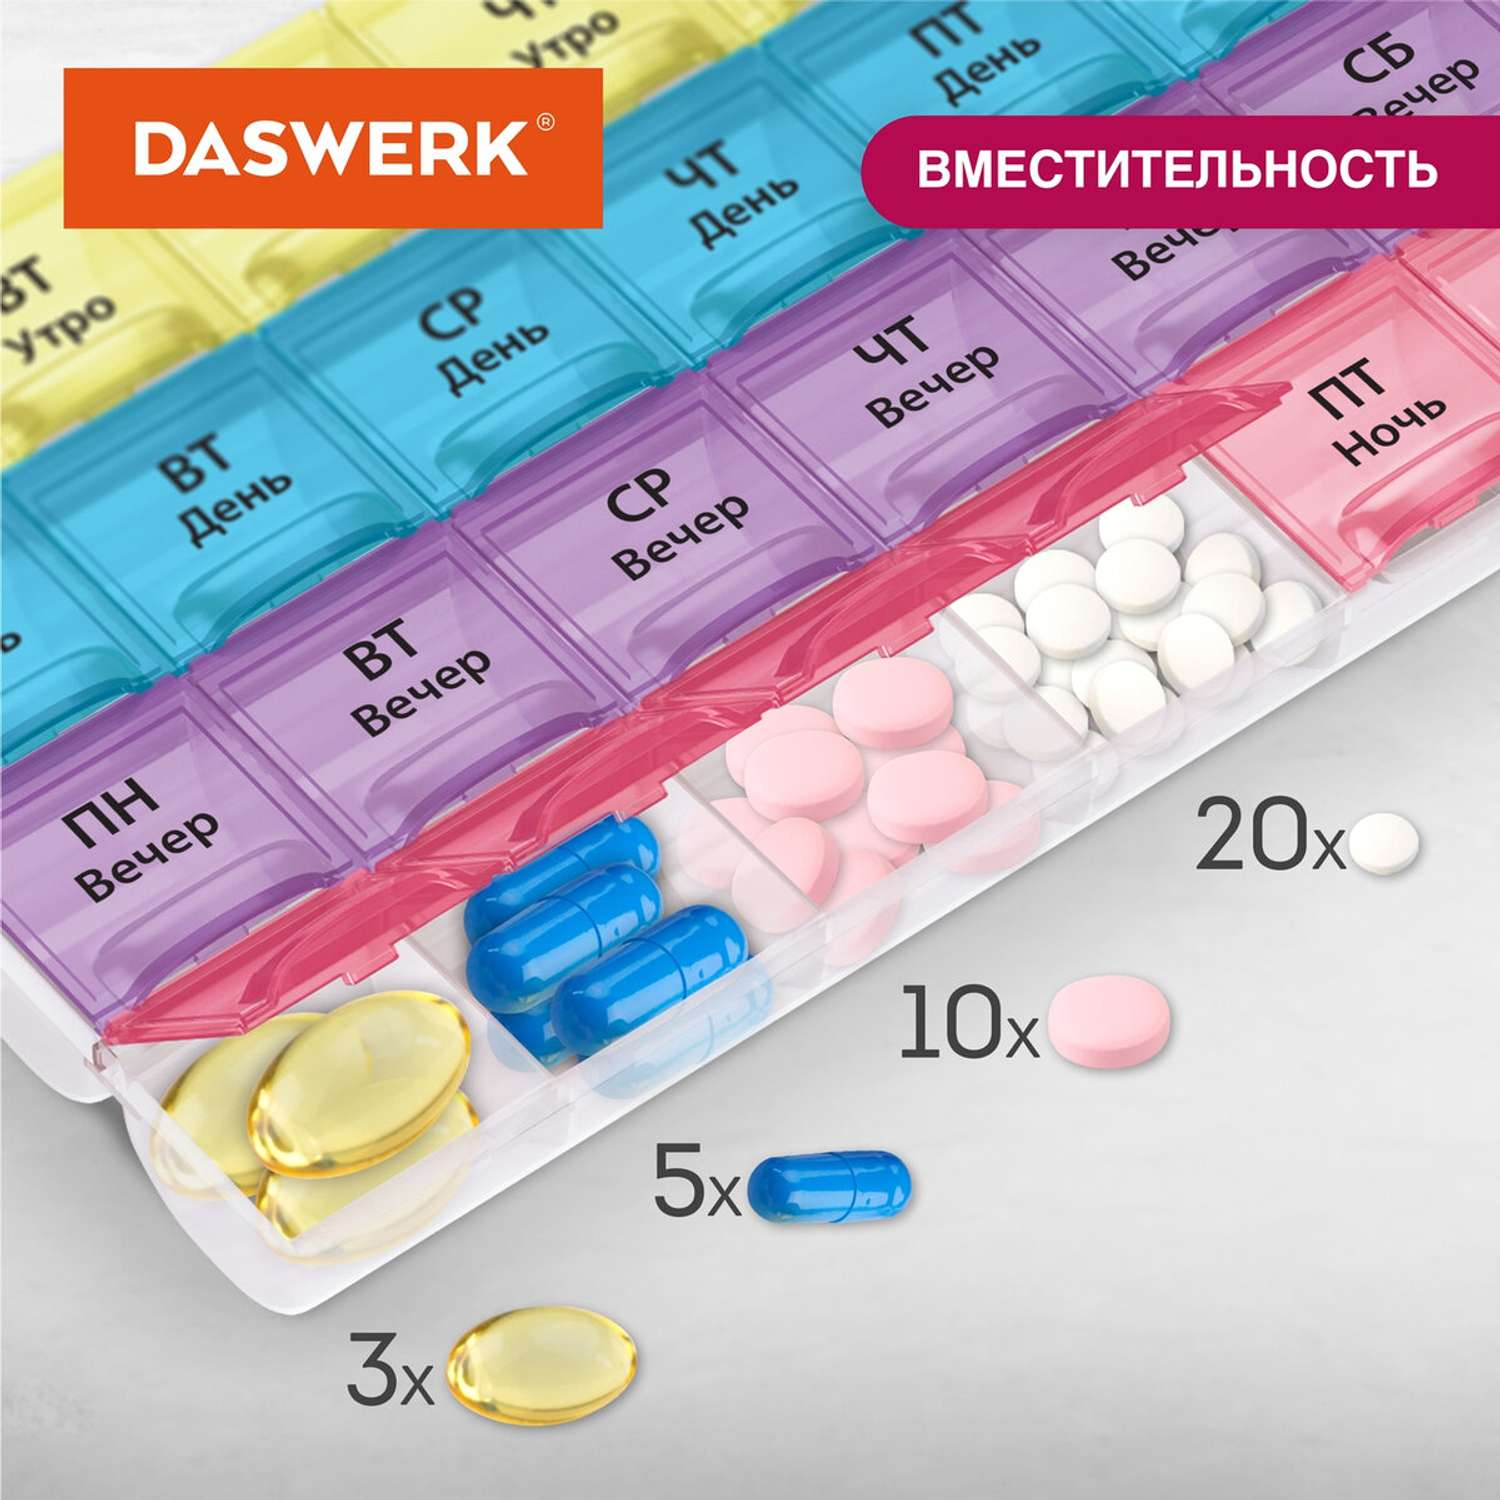 Таблетница DASWERK на неделю 4 приема - фото 3